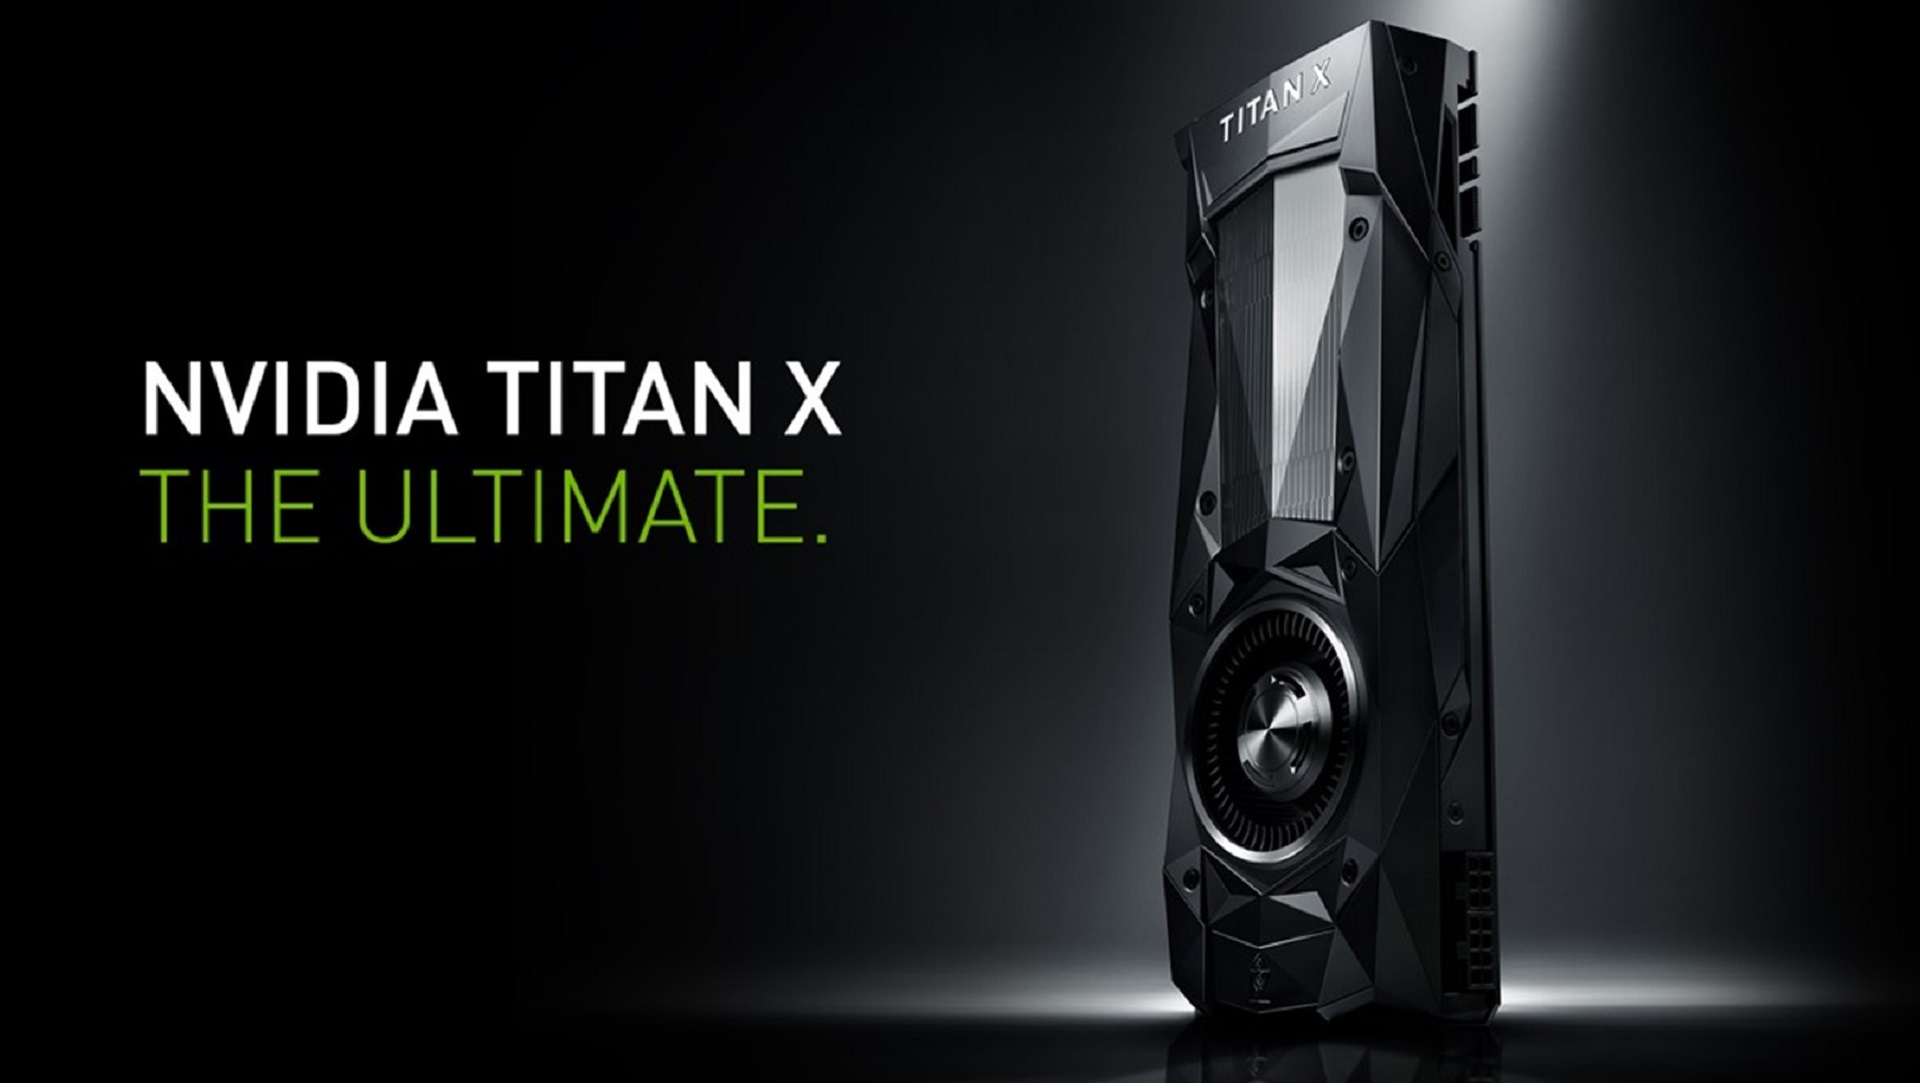 NVIDIA GTX Titan X chính thức lộ diện với giá 1200 USD